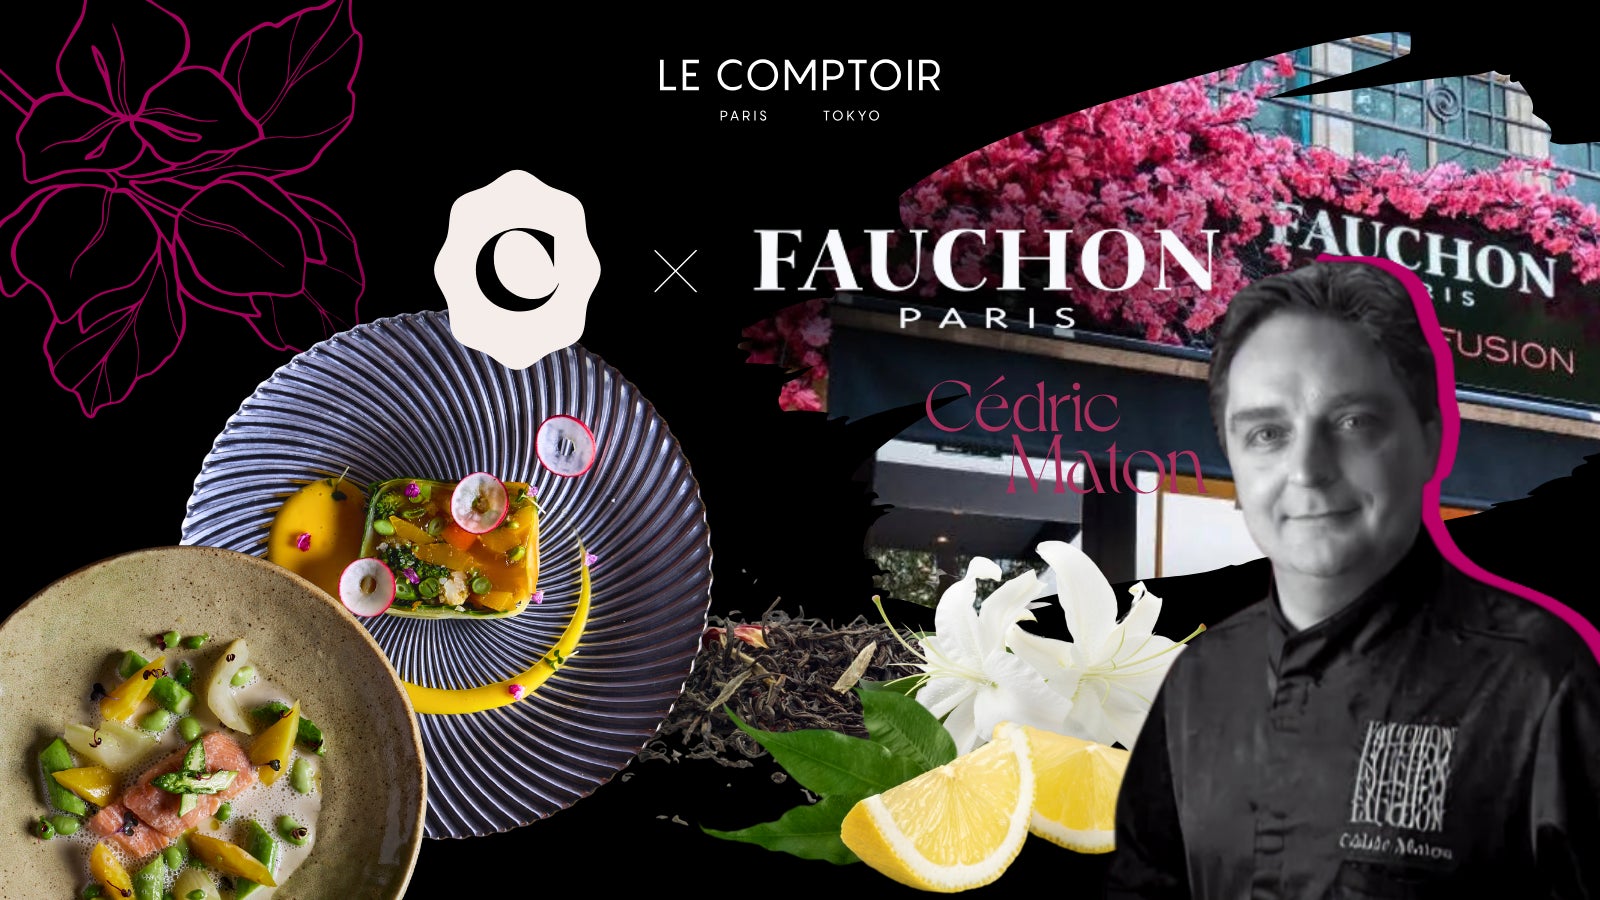 【FAUCHON X 体験型フレンチレストラン】著名な月替わりのゲストシェフが監修する特別メニューを楽しめる渋谷の体験型レストラン Le Comptoirにフォションとのコラボレーションメニューが登場